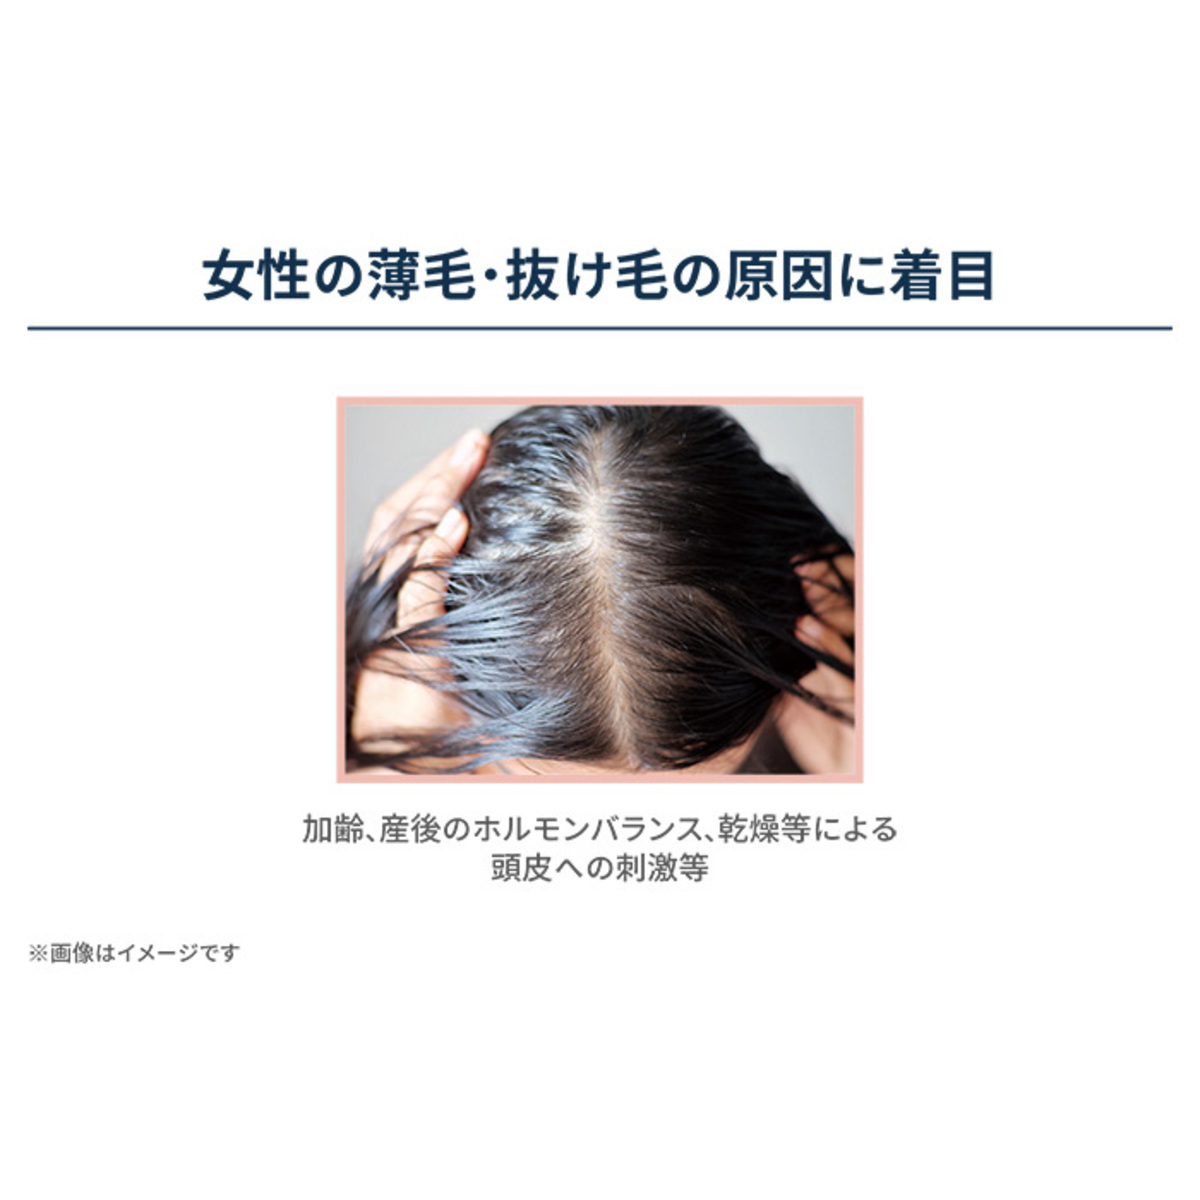 ヘアモア 薬用スカルプエッセンス詰め替え用エコパック120ml - QVC.jp